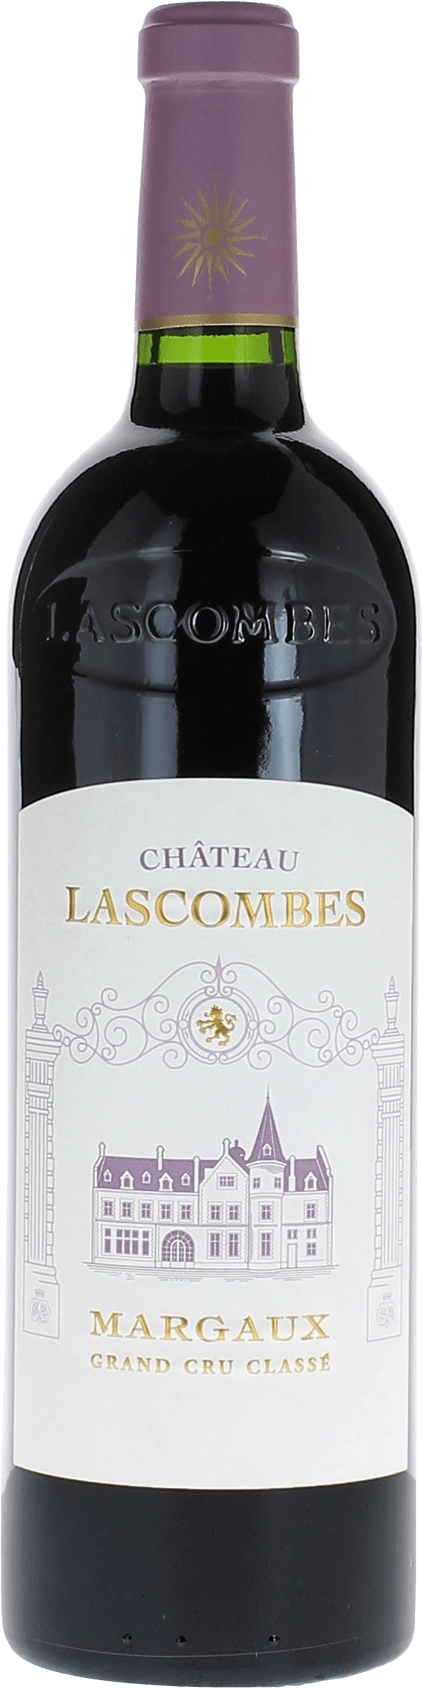 Lascombes 2004 2me Grand cru class Margaux, Bordeaux rouge